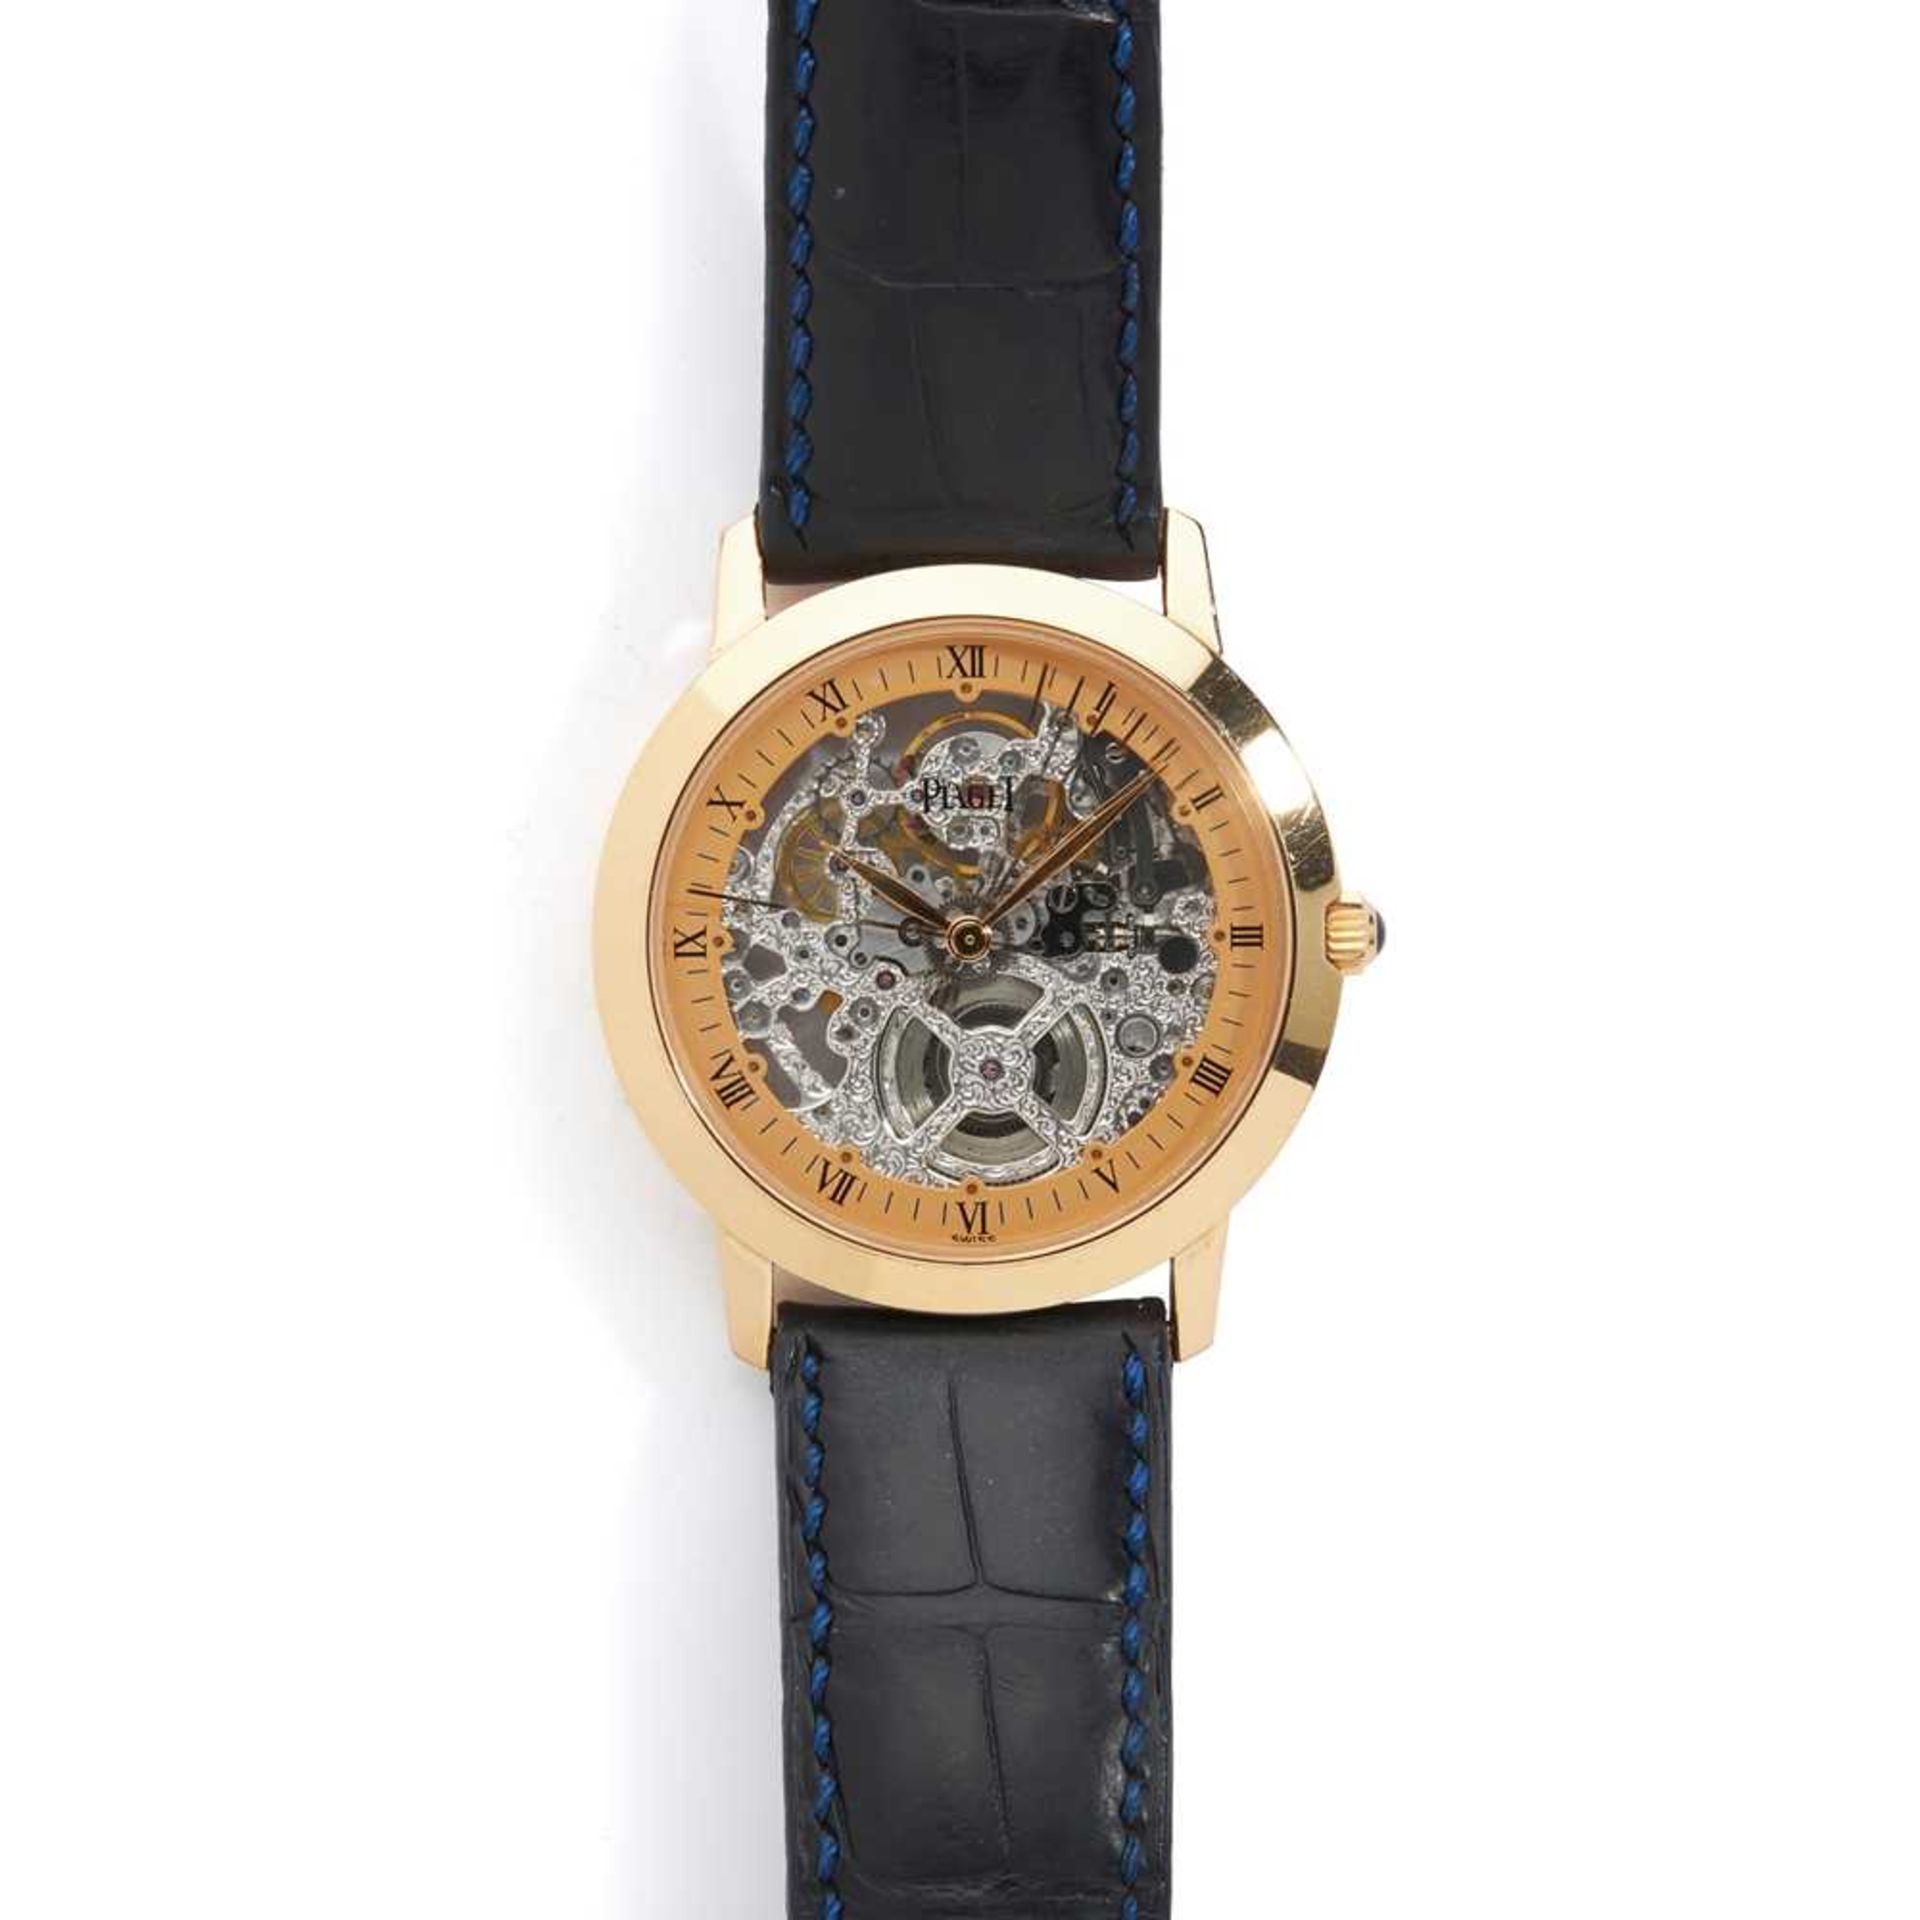 Piaget: a rare Altiplano wrist watch